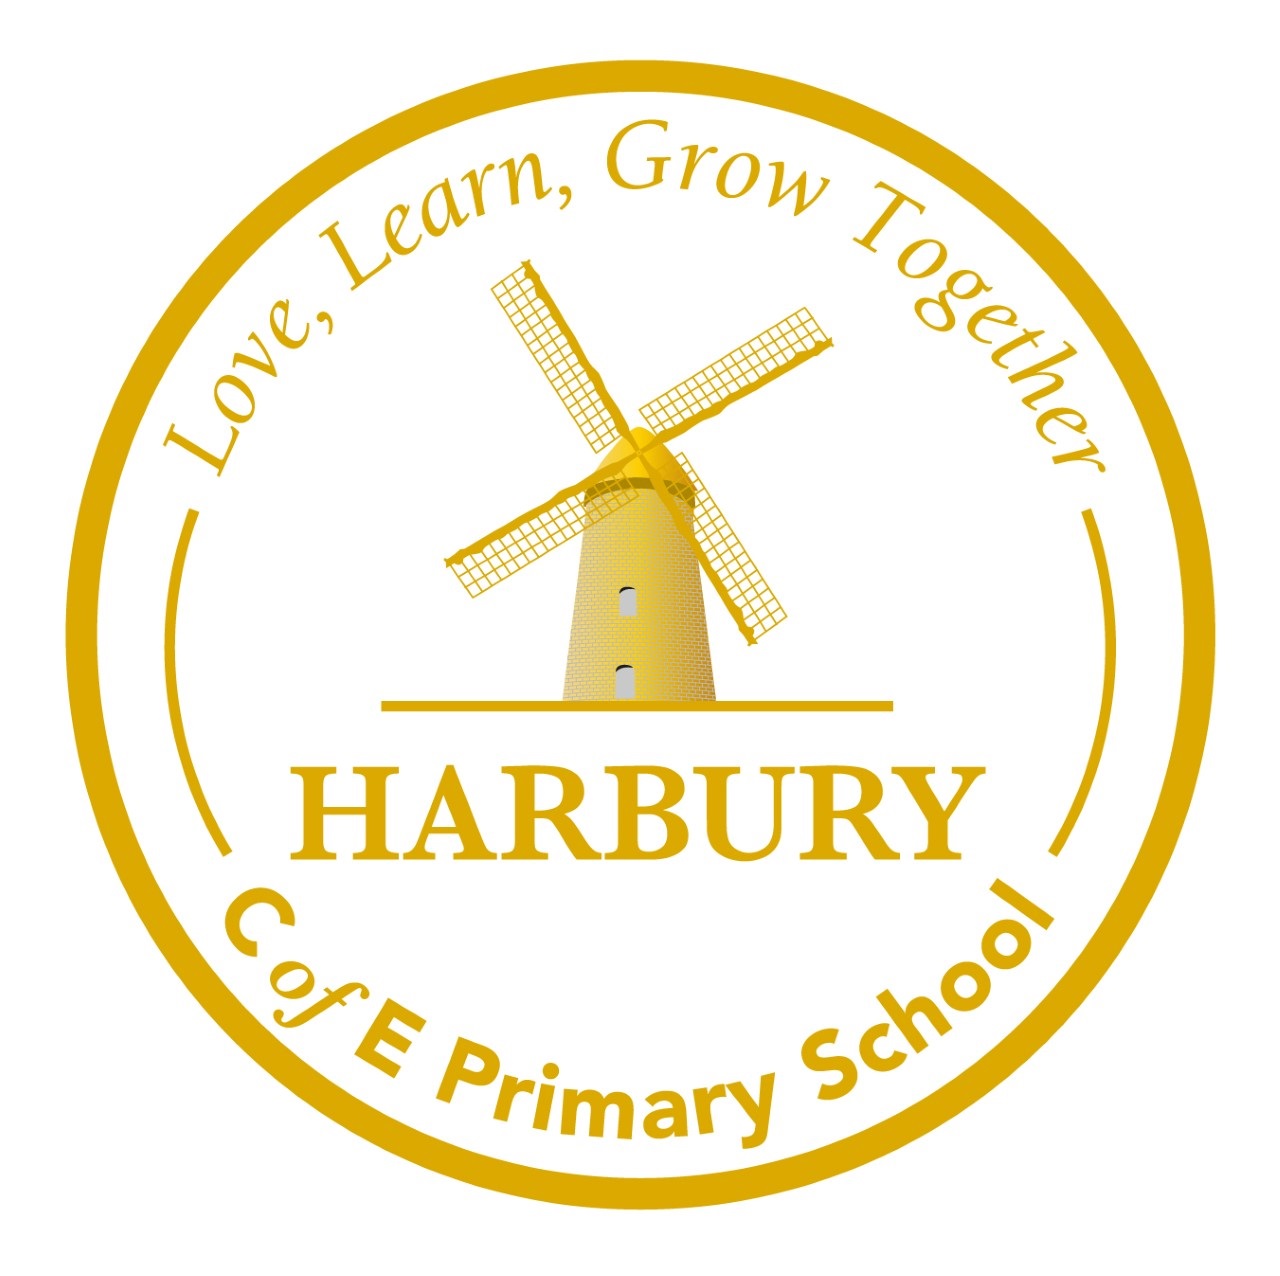 Harbury C of E Primary School